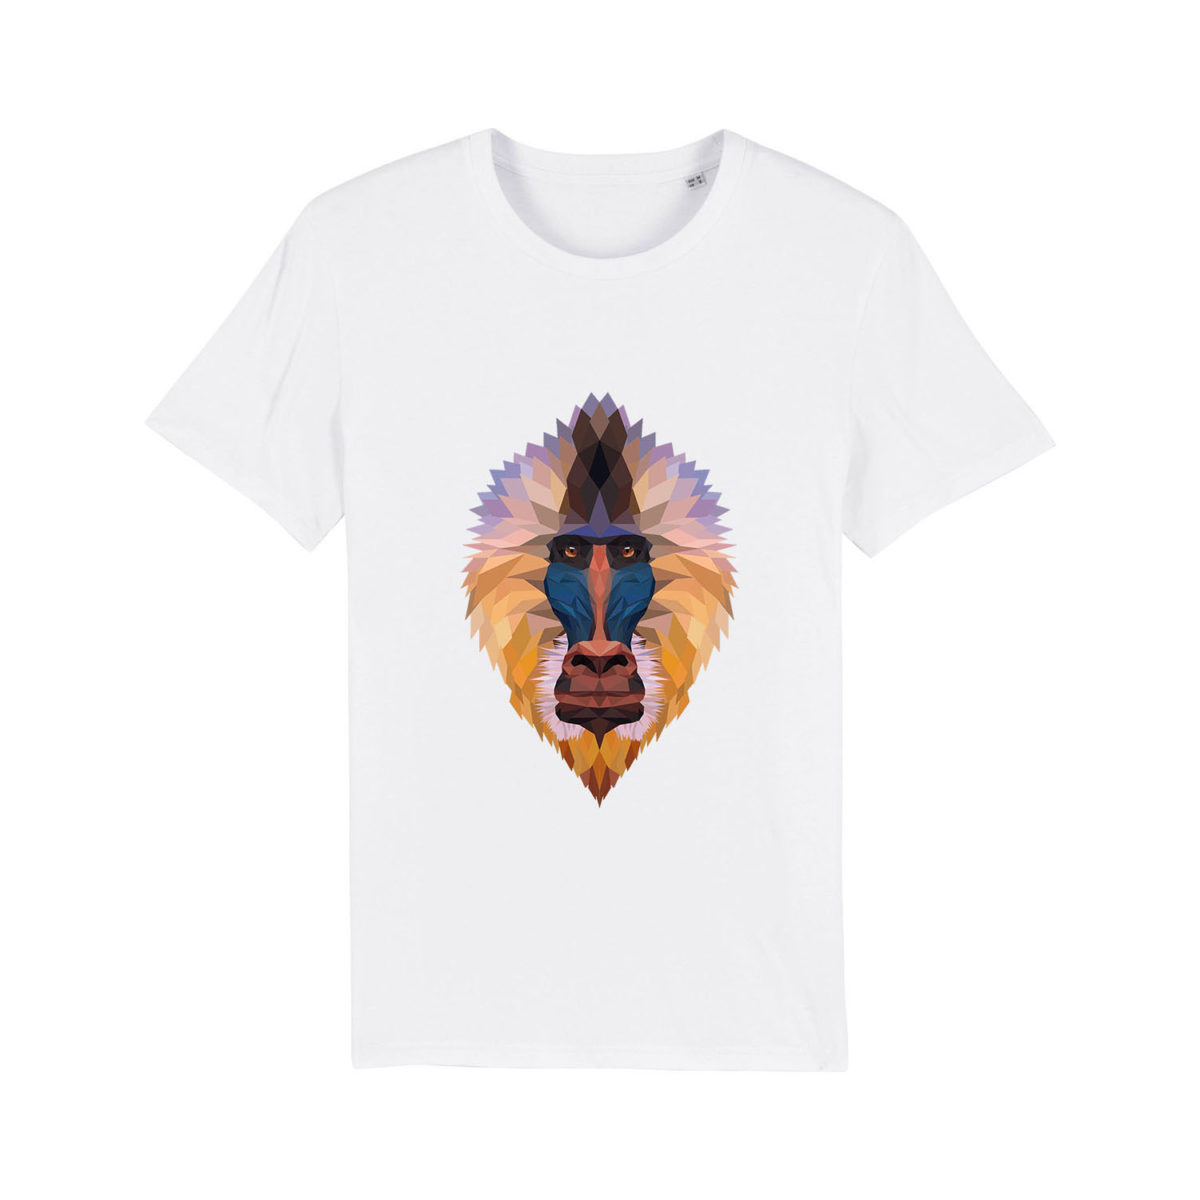 T-shirt – “Mandrill”